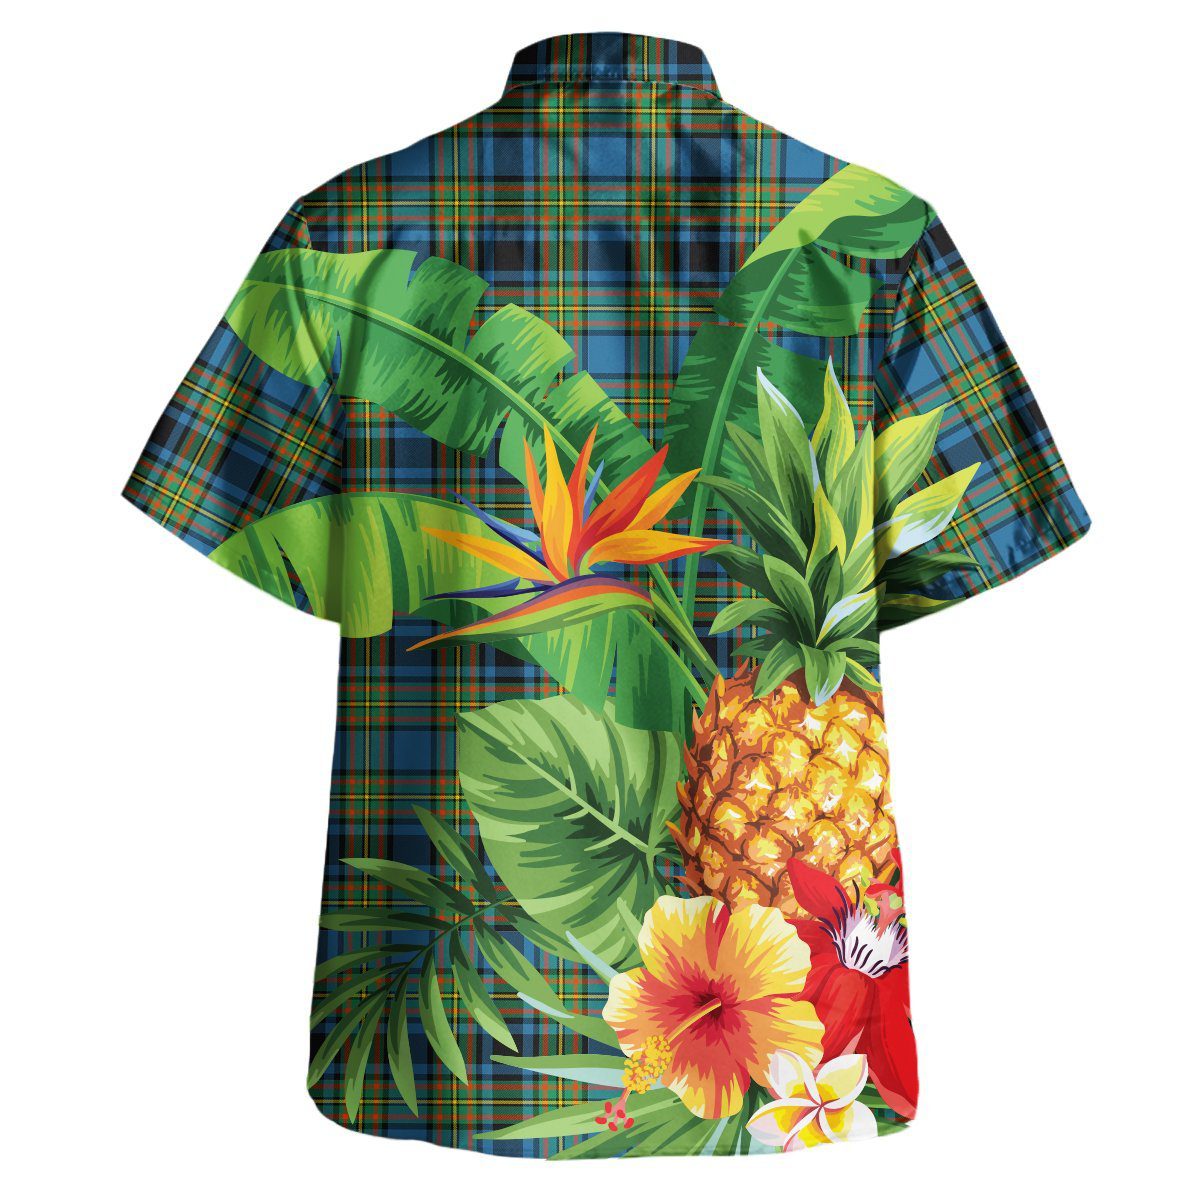 Gillies Ancient Tartan Aloha Shirt version 2